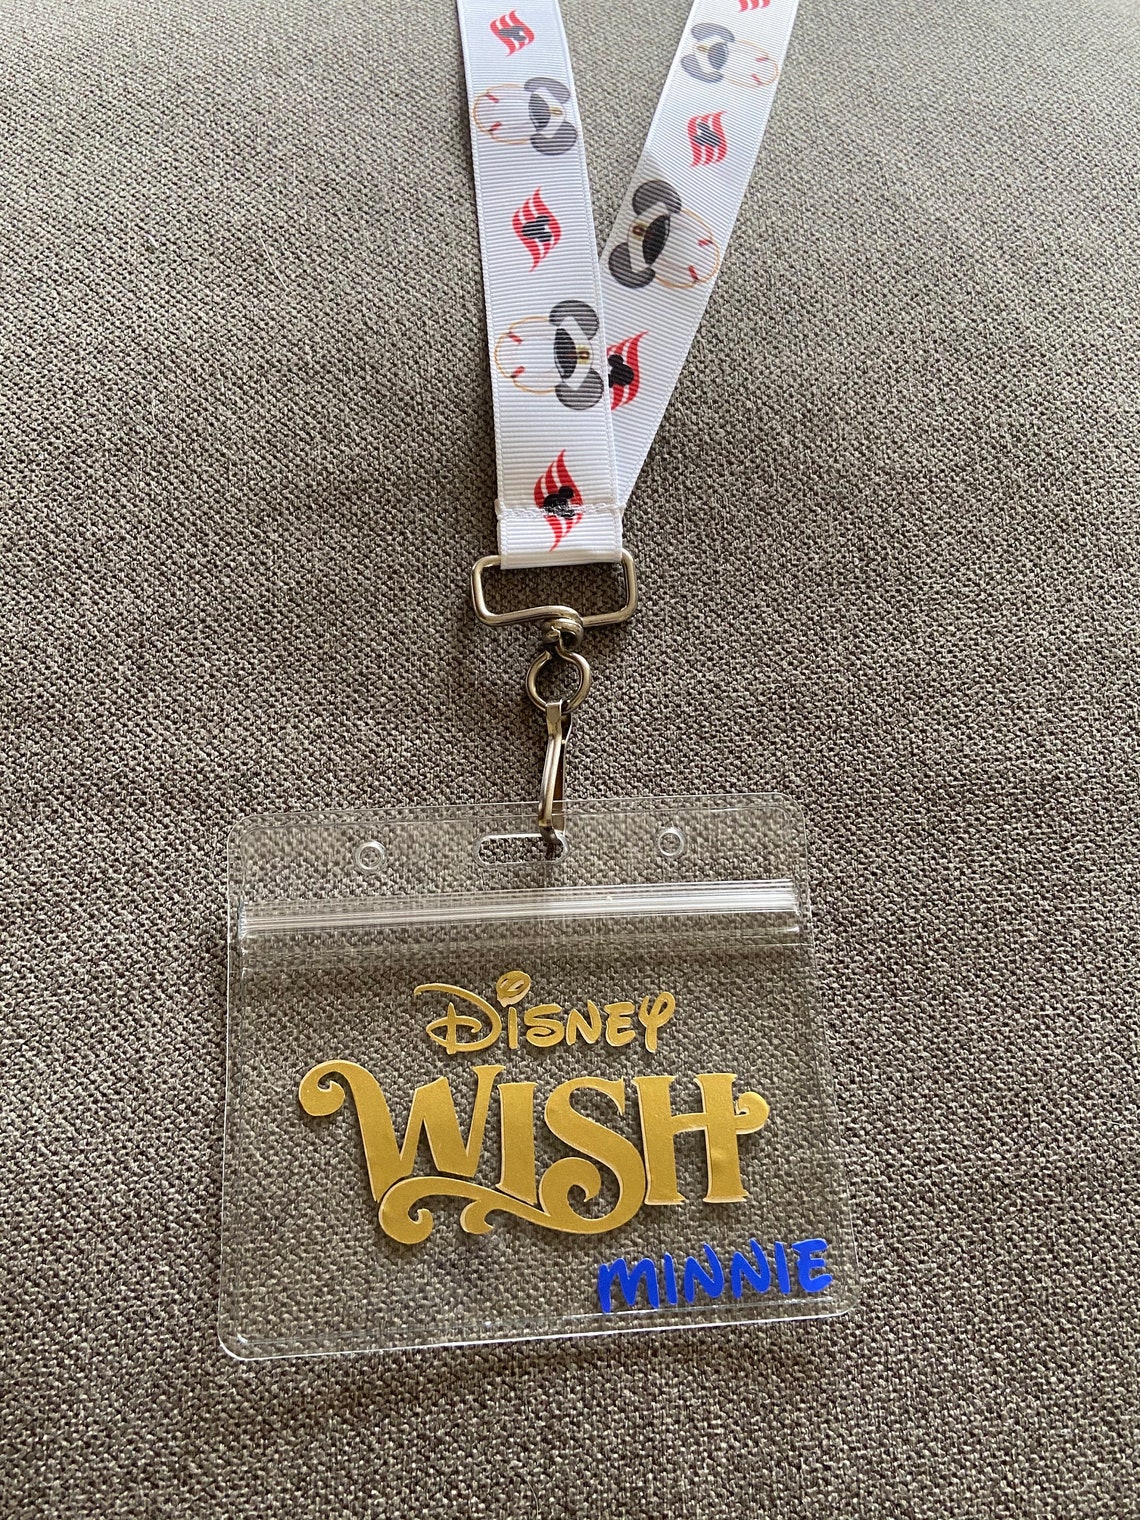 DCL Disney Wish cruise badge holder key to the world | Etsy